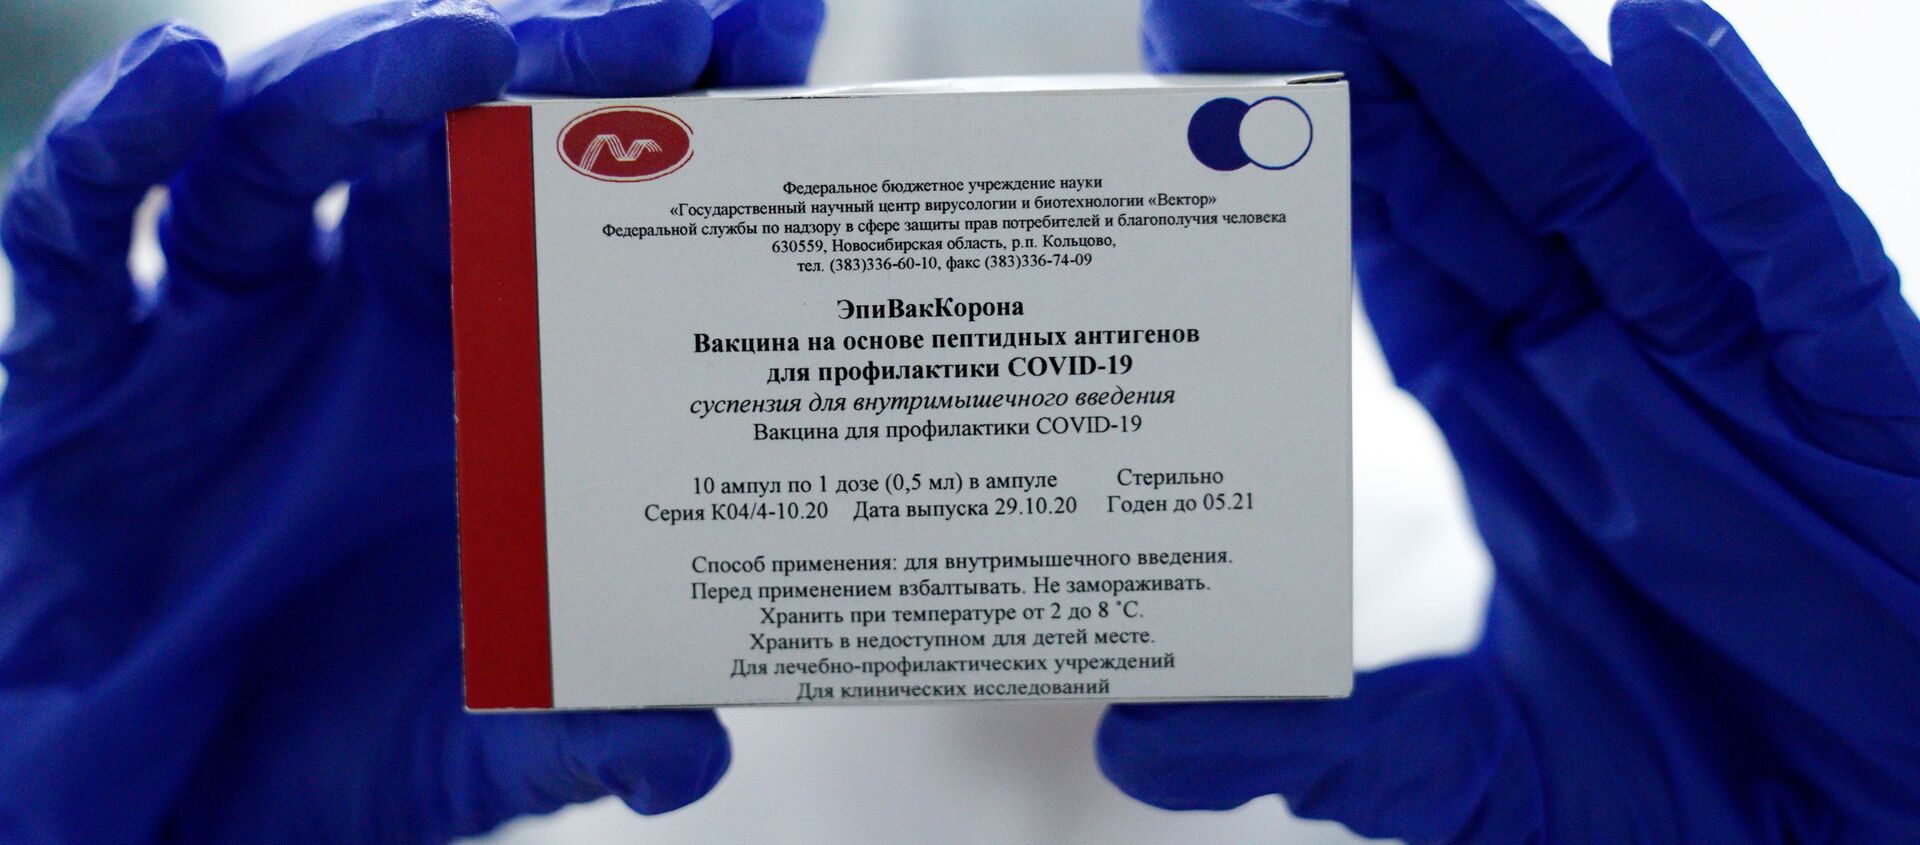 Медработник демонстрирует вакцину ЭпиВакКорона в процедурном кабинете - Sputnik Moldova, 1920, 08.04.2021